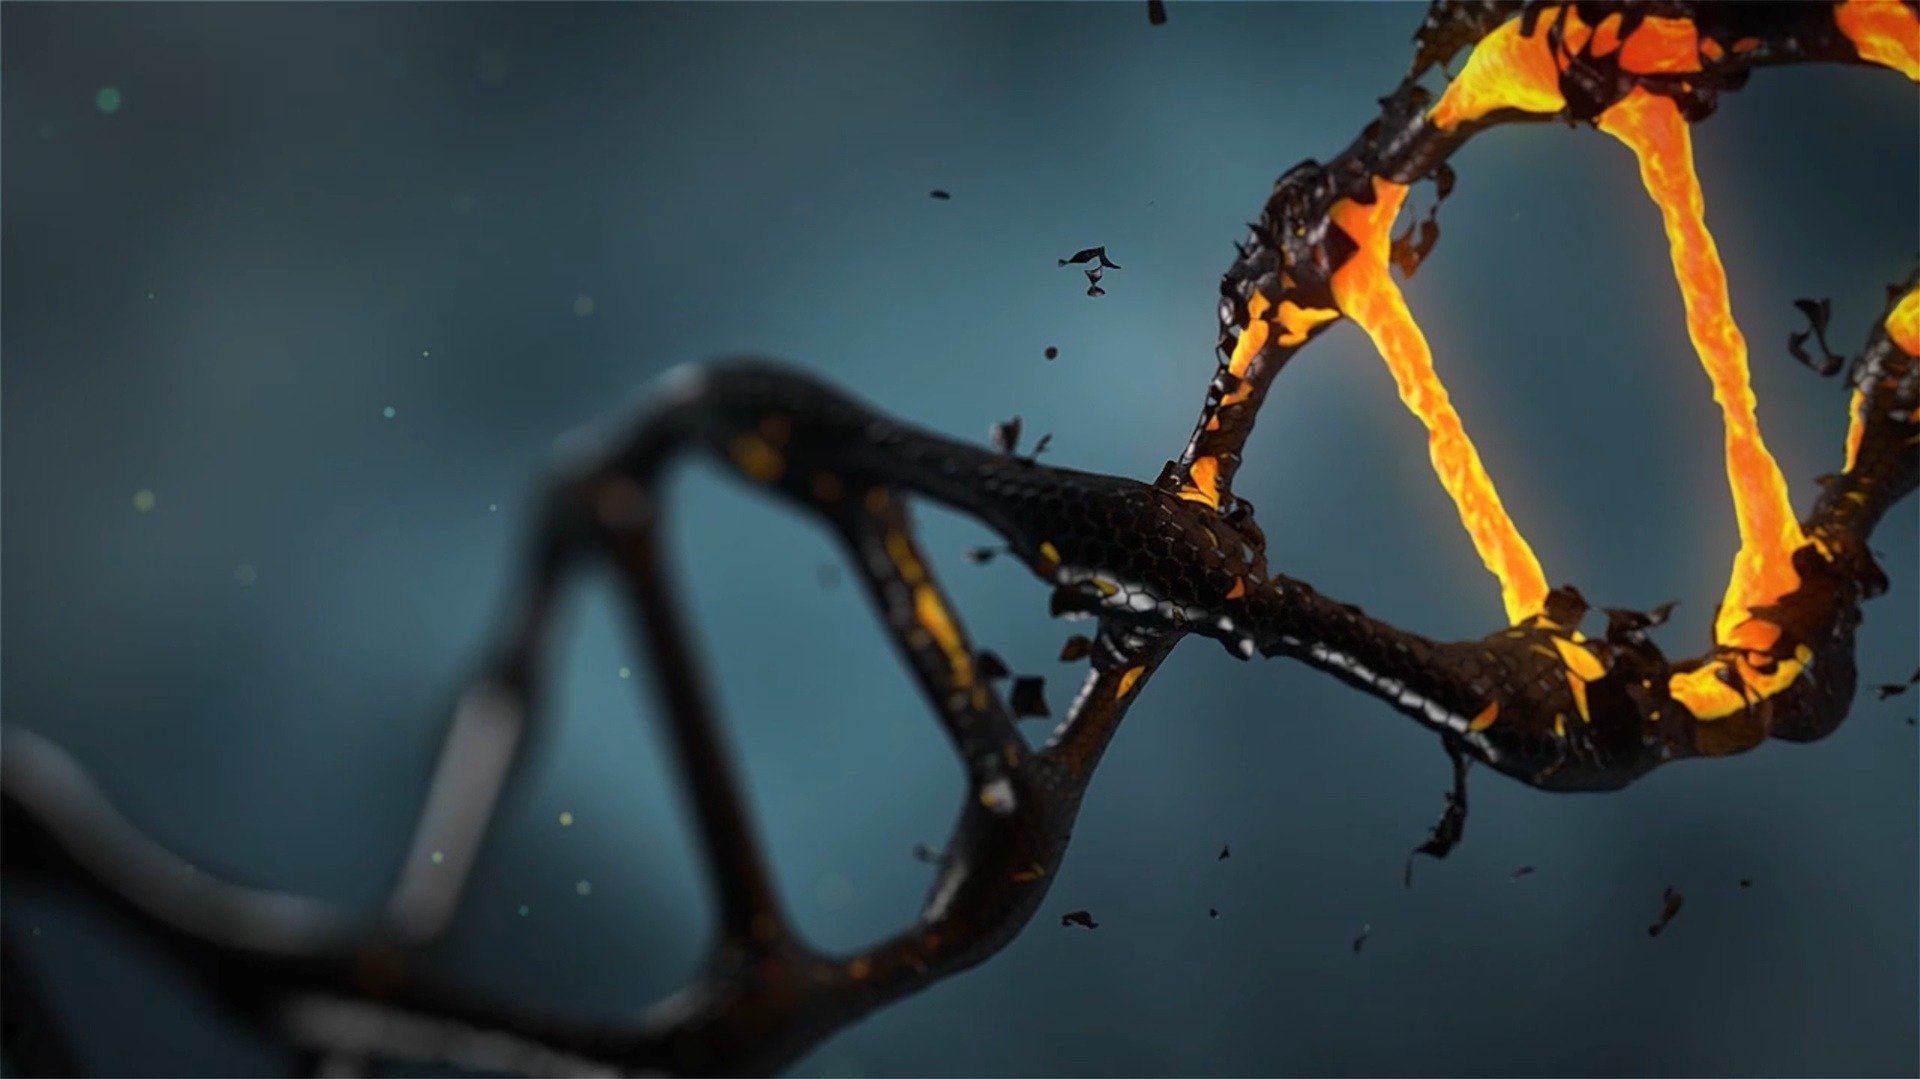 Los investigadores descubren la reparación del ADN humano mediante metamorfosis nuclear